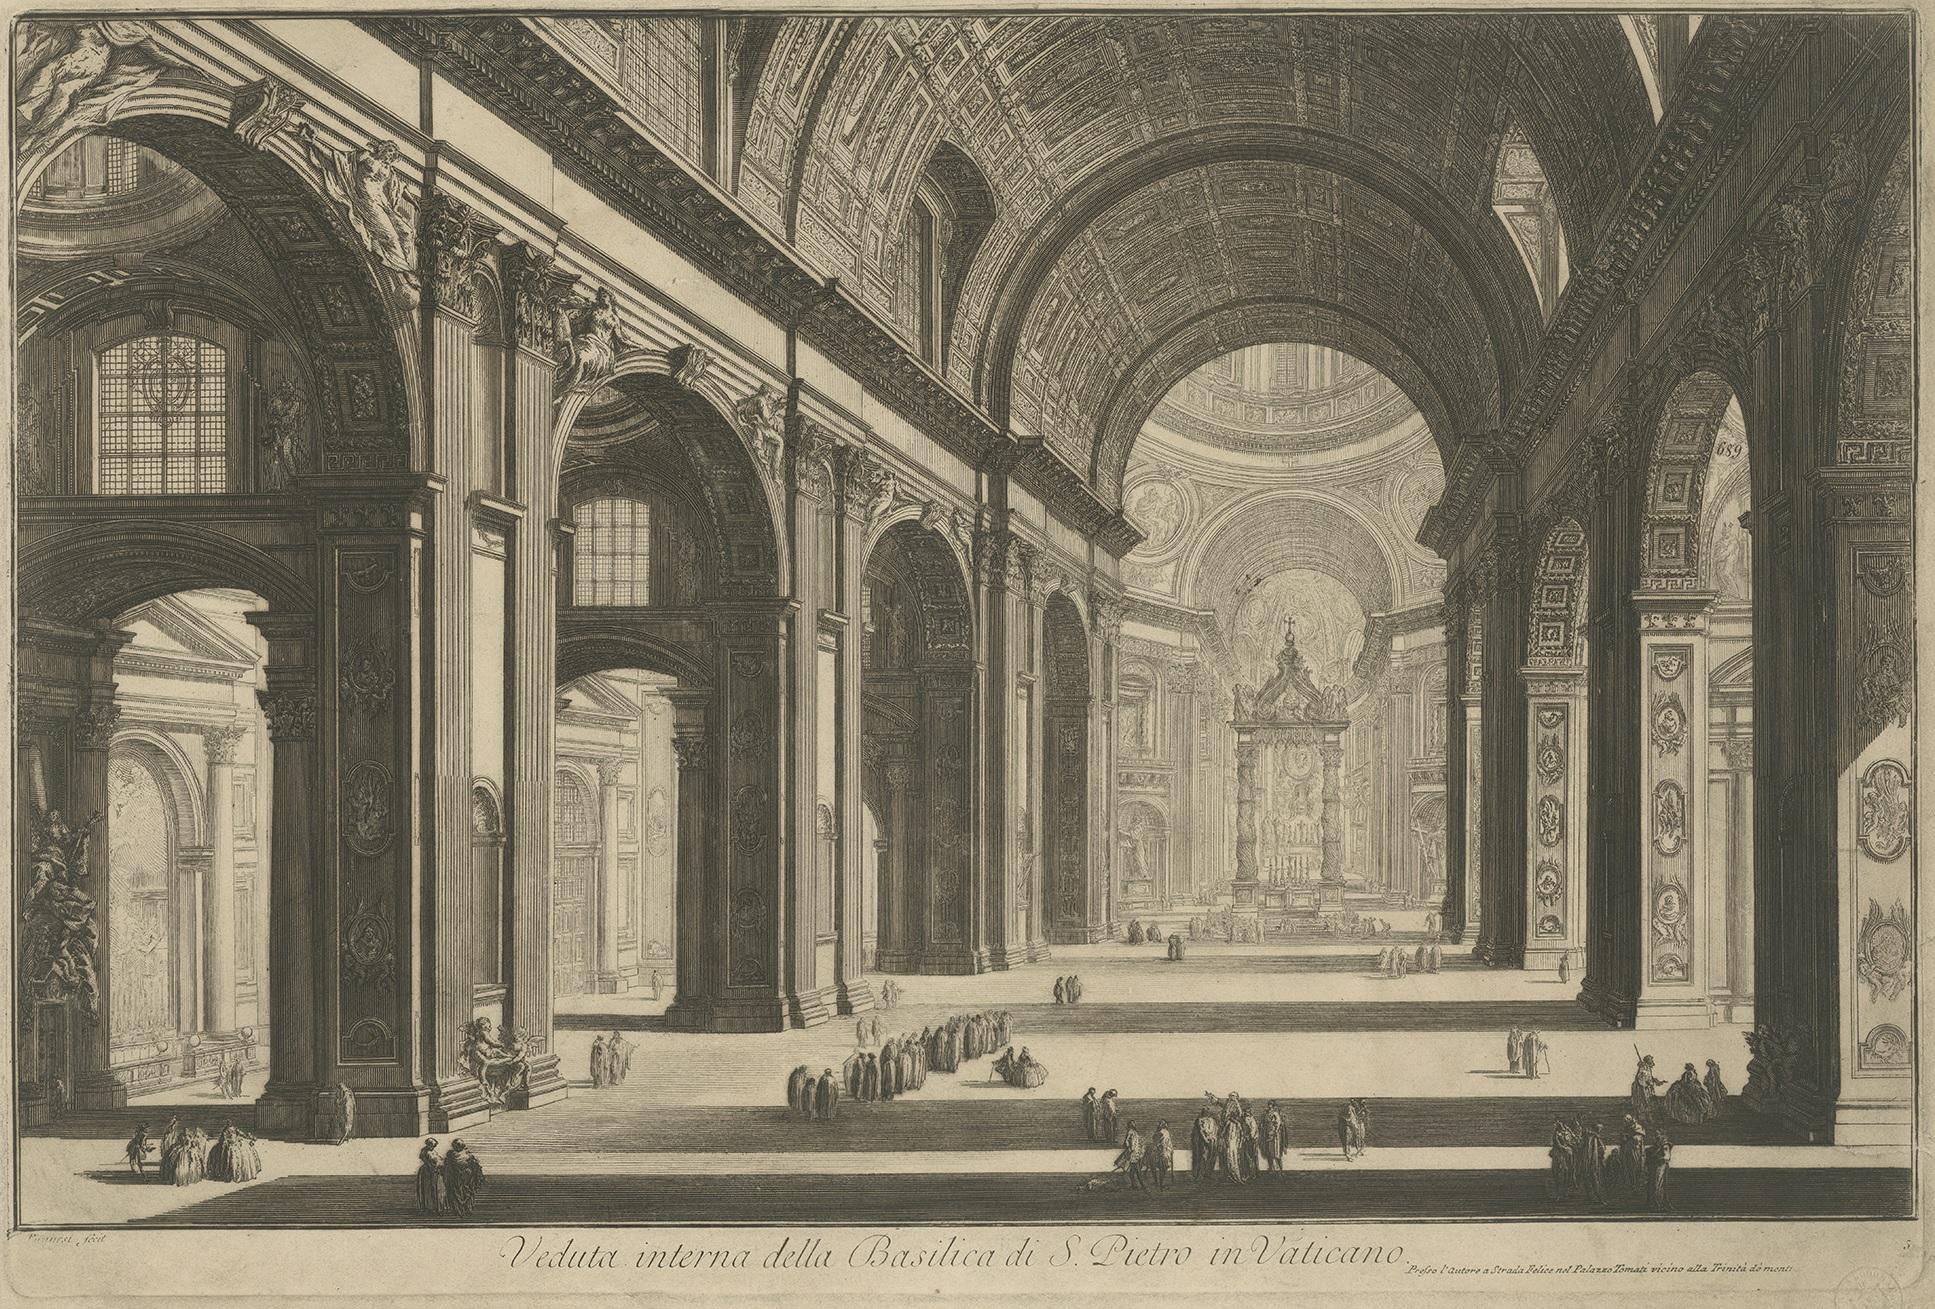 Antiker Druck mit dem Titel 'Veduta interna della Basilica di S. Pietro in Vaticano'. Blick auf das Innere des Petersdoms im Vatikan, Rom. Veröffentlicht nach Piranesi, um 1820.